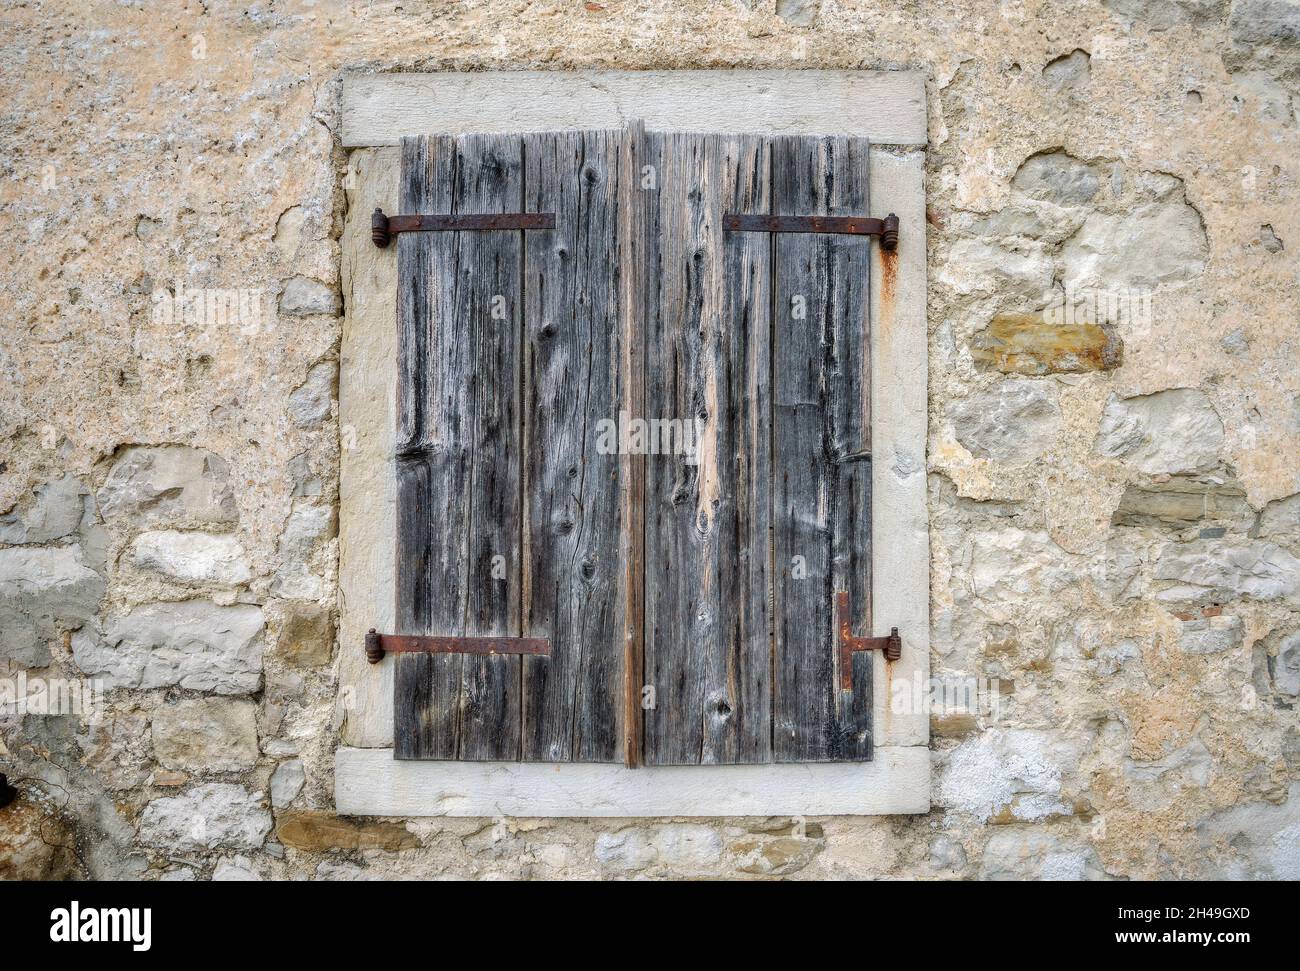 Primo piano di una finestra con persiane di legno su muro di pietra di vecchia casa. Hum, Croazia Foto Stock